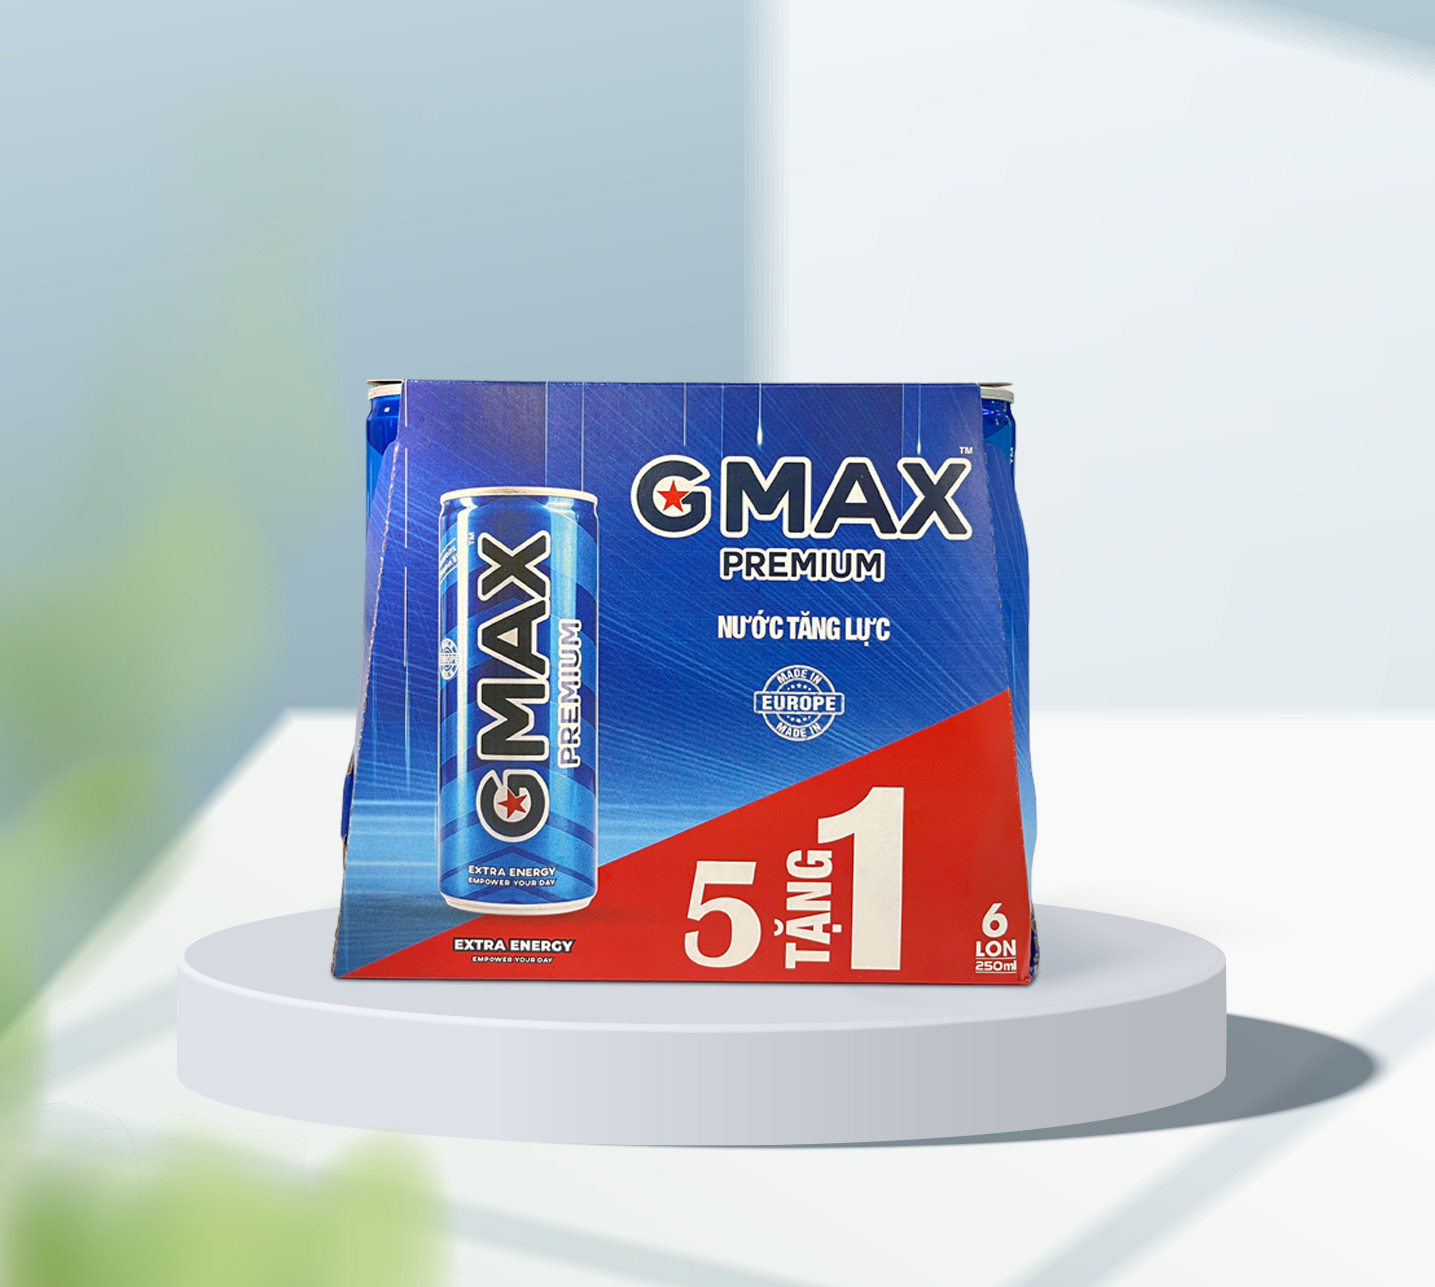 MUA 5 TẶNG 1 Nước tăng lực Gmax Premium energy drink nhập khẩu từ Châu Âu